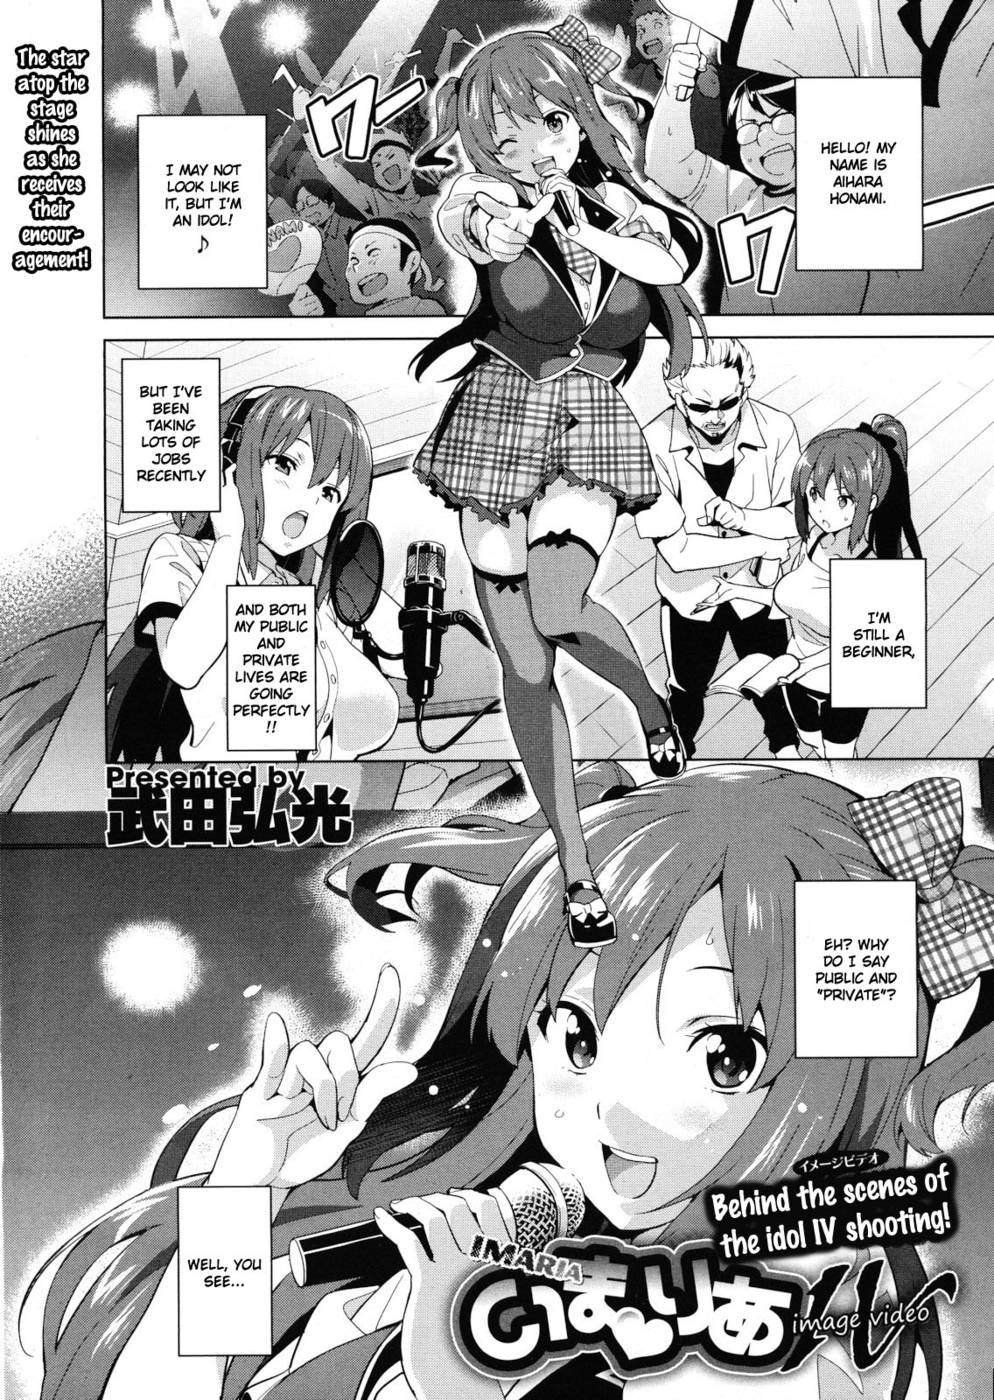 Hentai Manga Comic-Ima Ria IV-Read-1